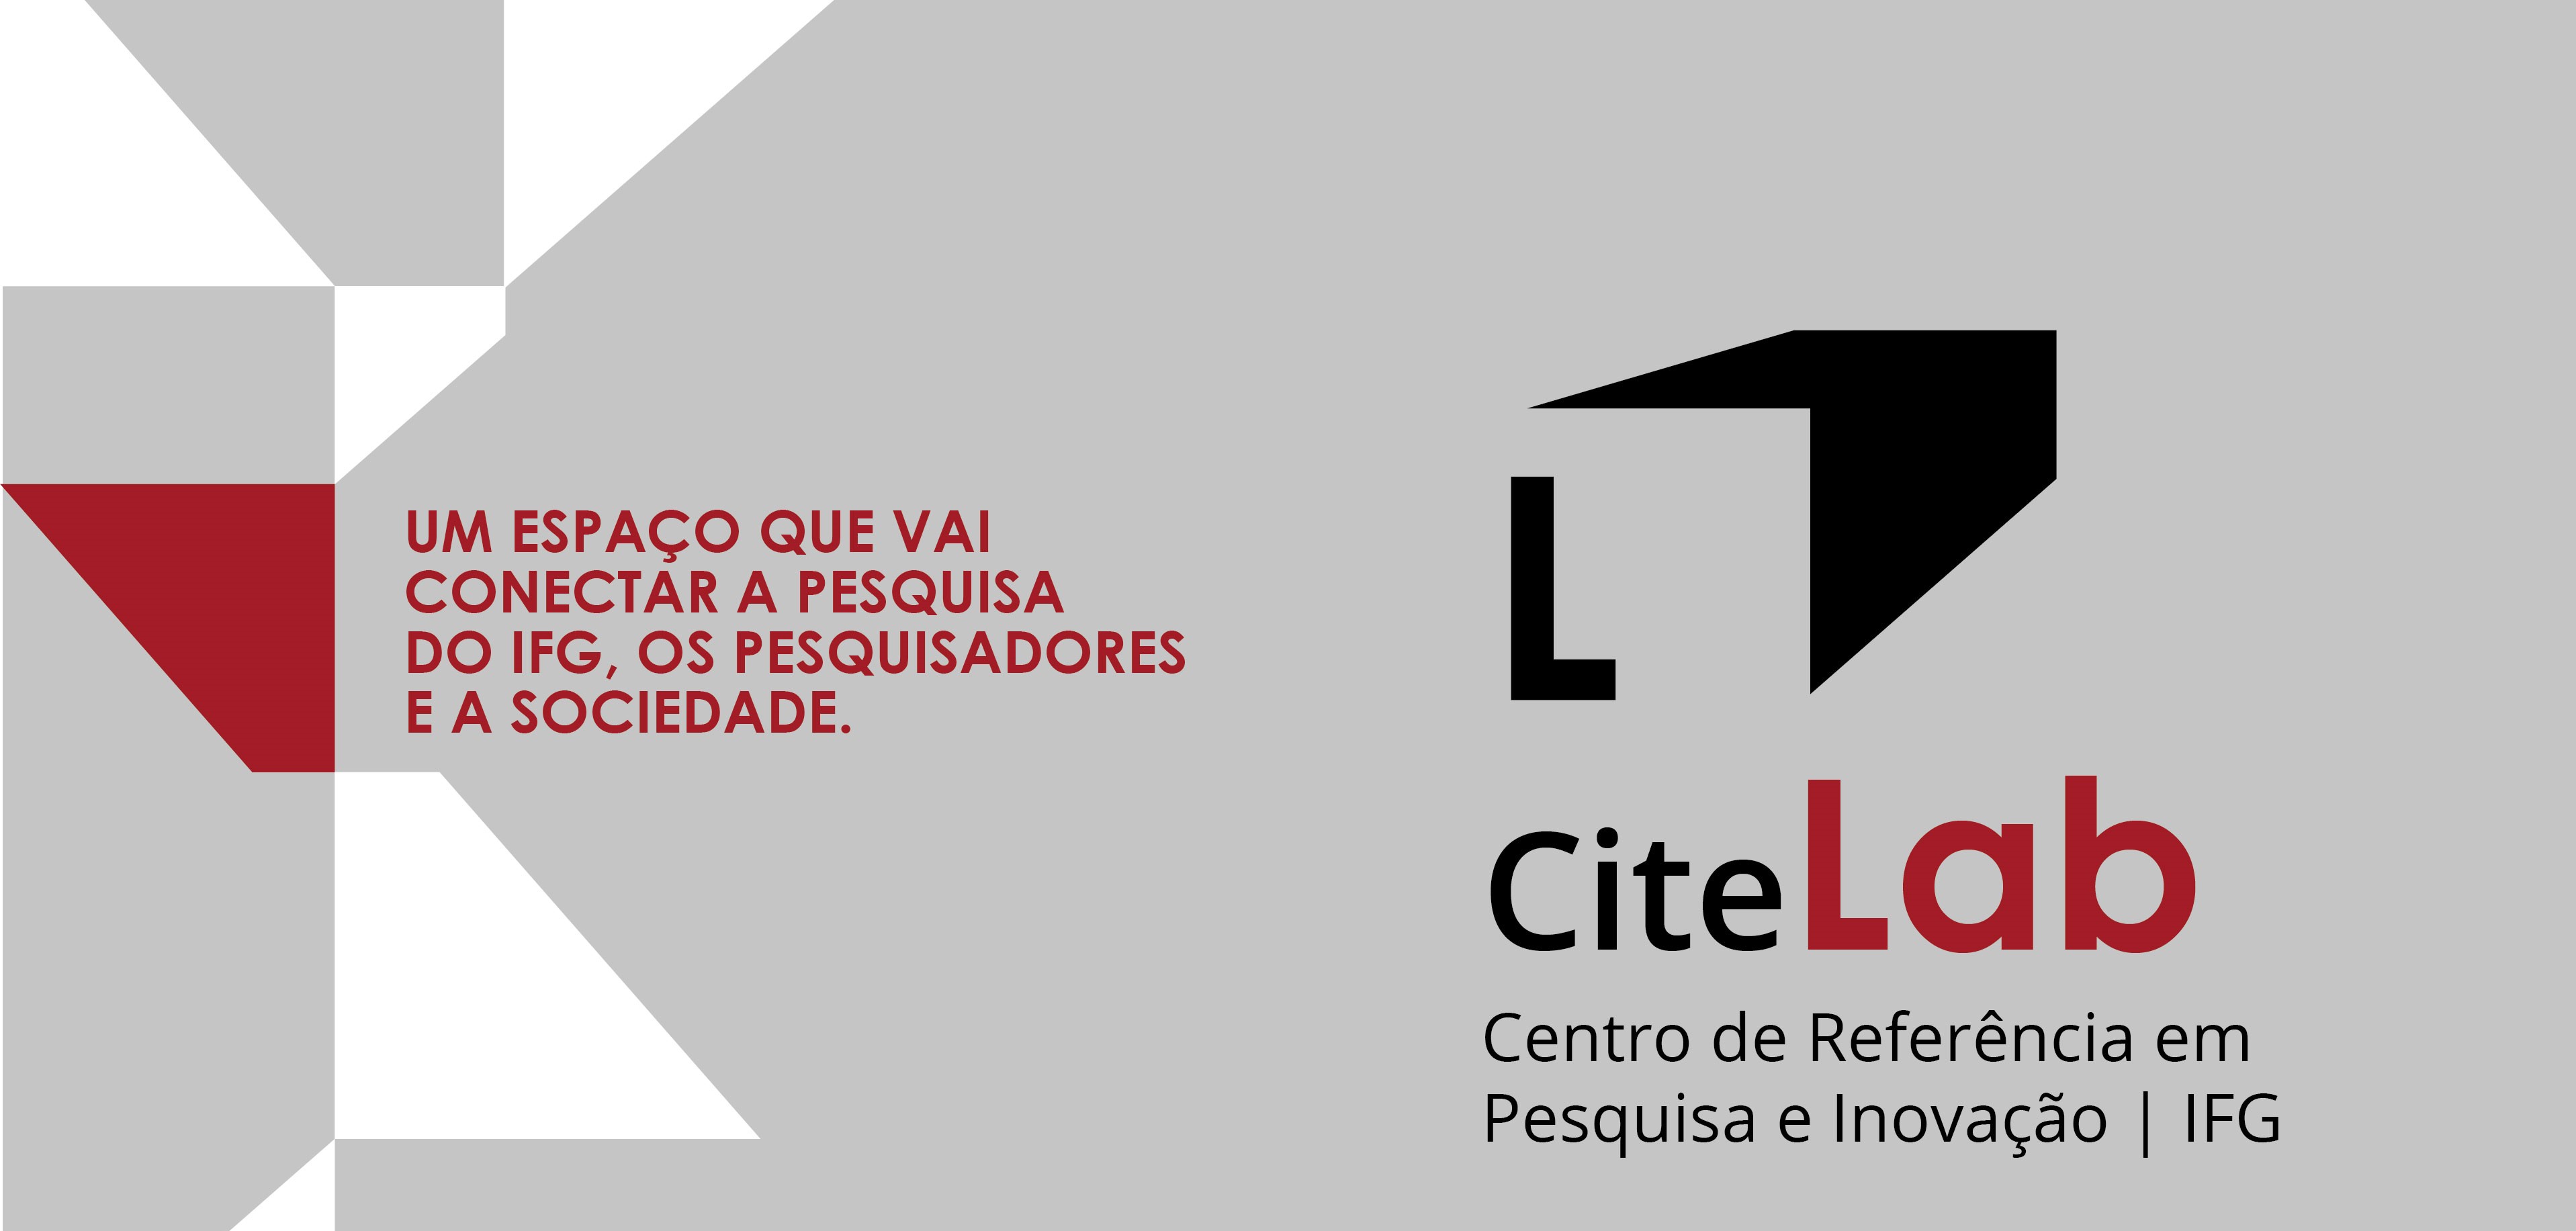 CiteLab é o novo Centro de Pesquisa do IFG